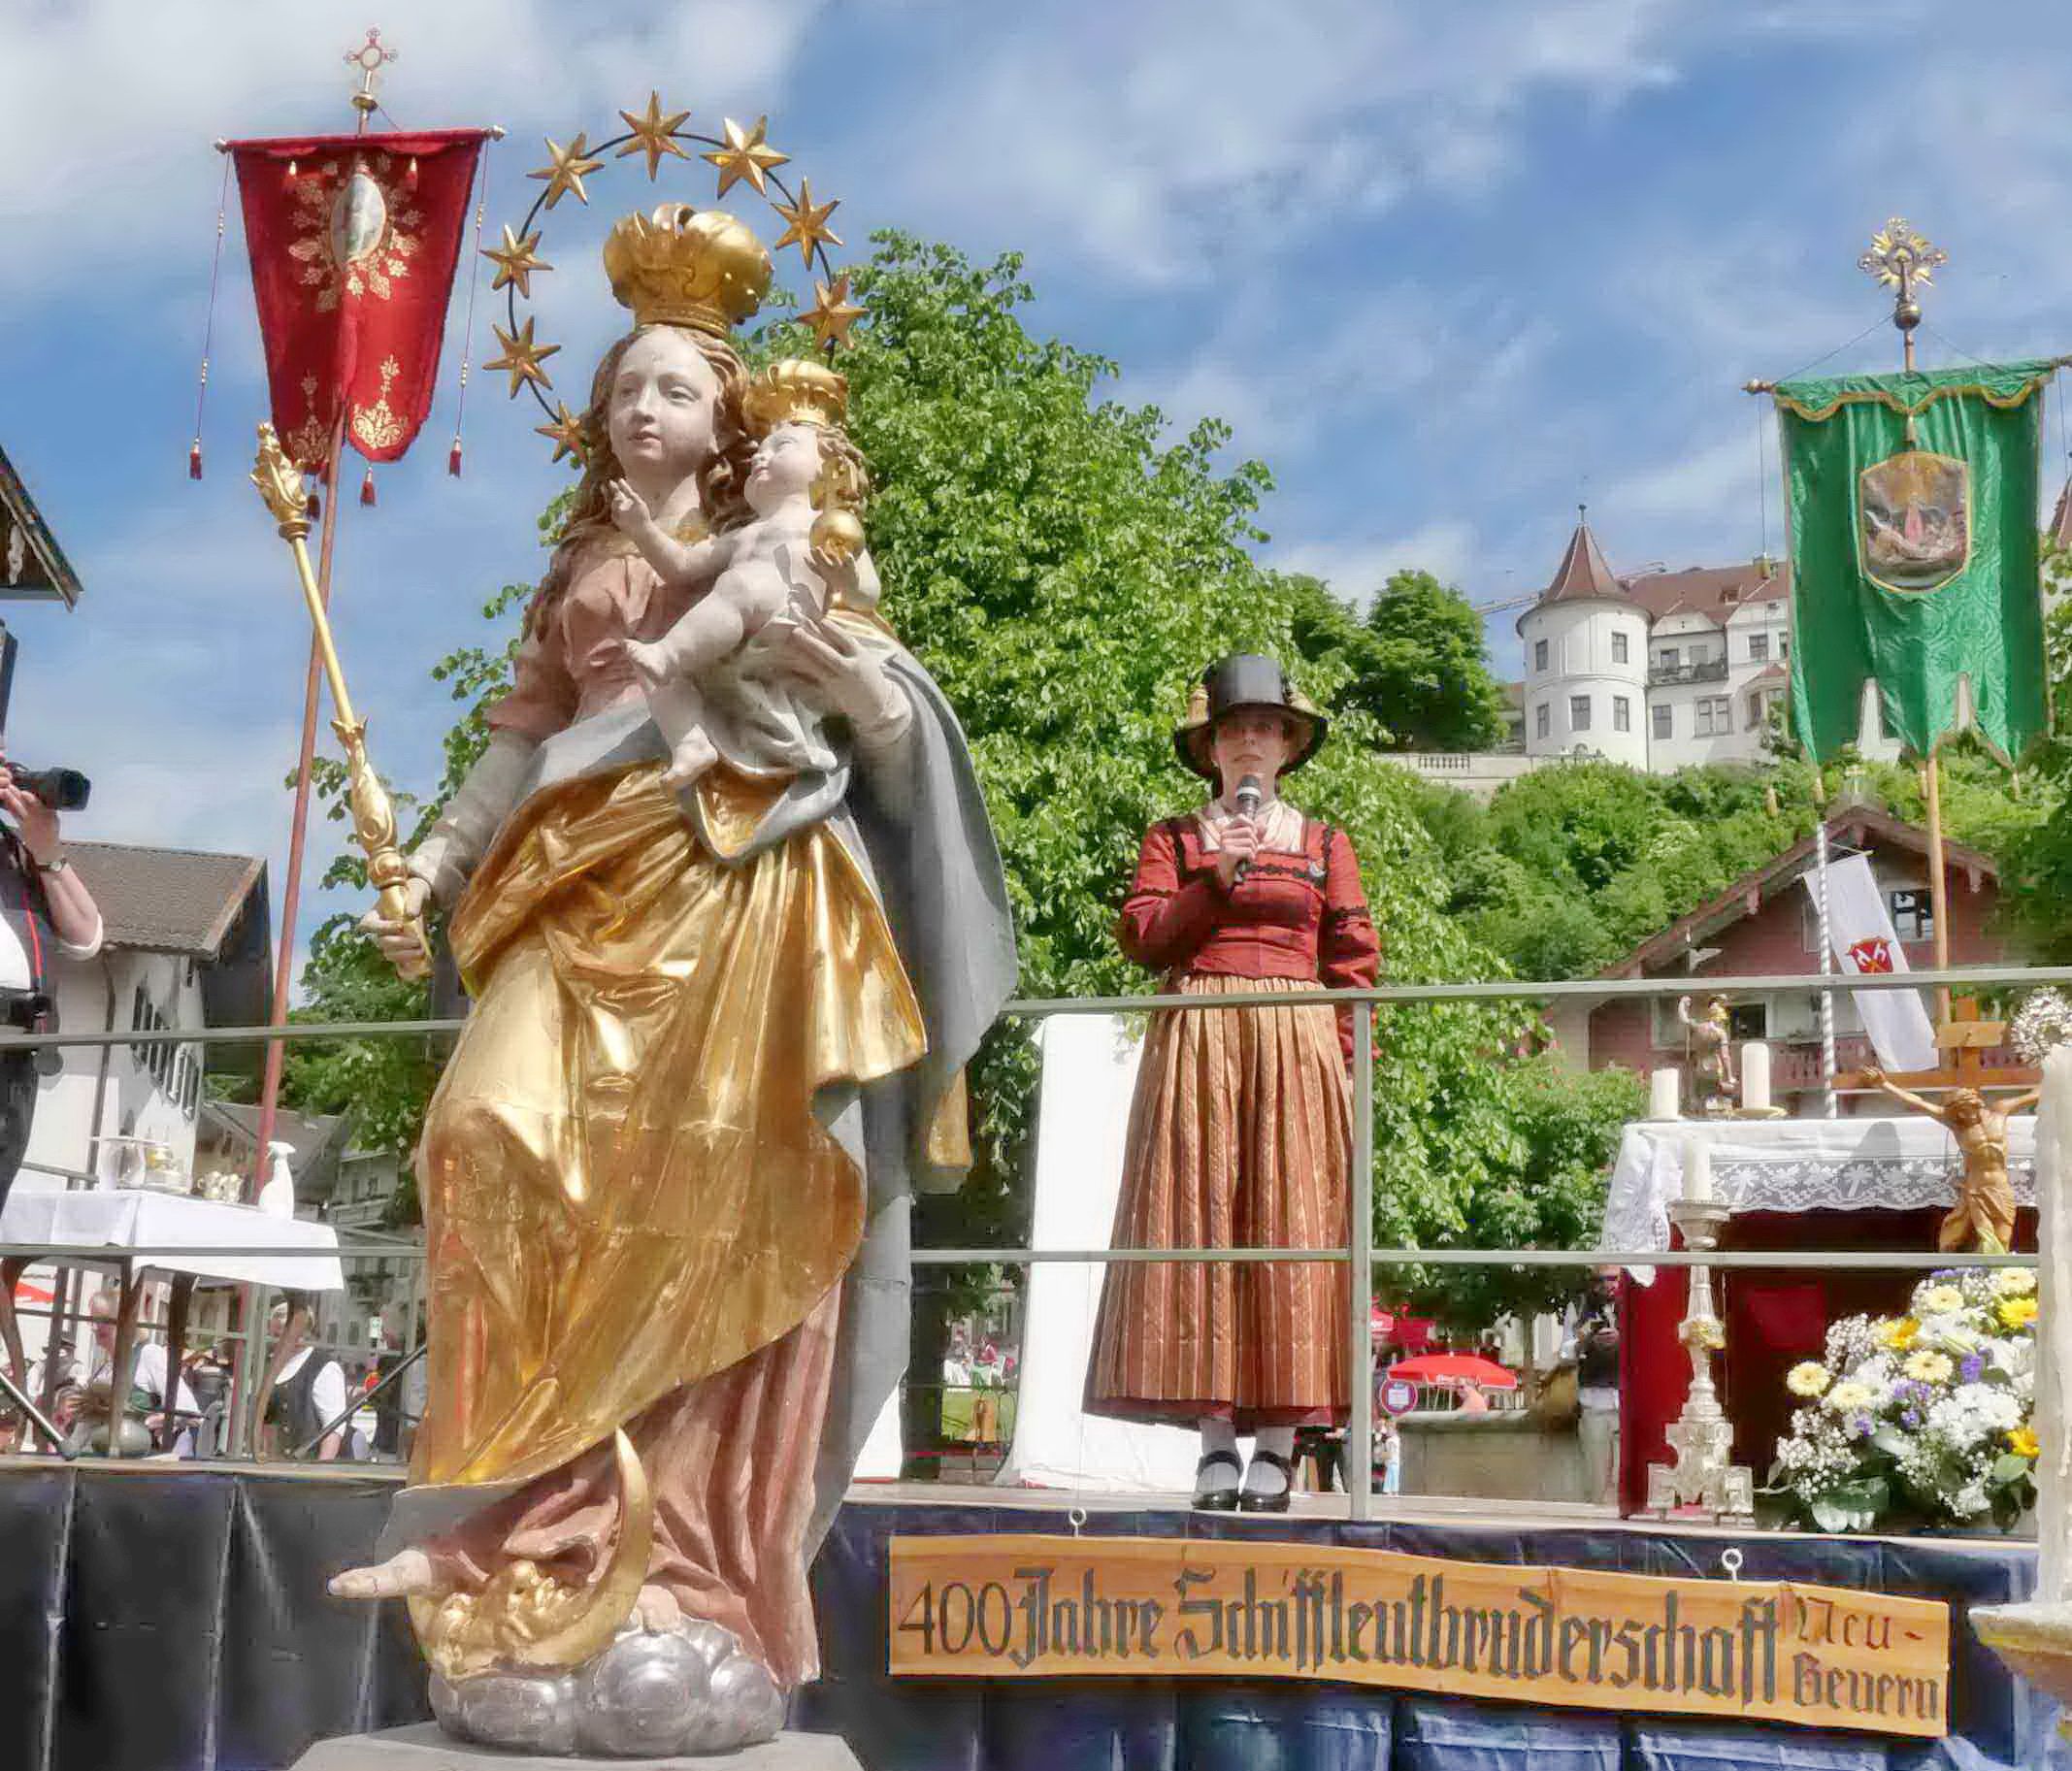 Maria-Statue Dahinter Frau in Tracht auf Bühne, dahinter auf Anhöhe Schloss Neubeuern